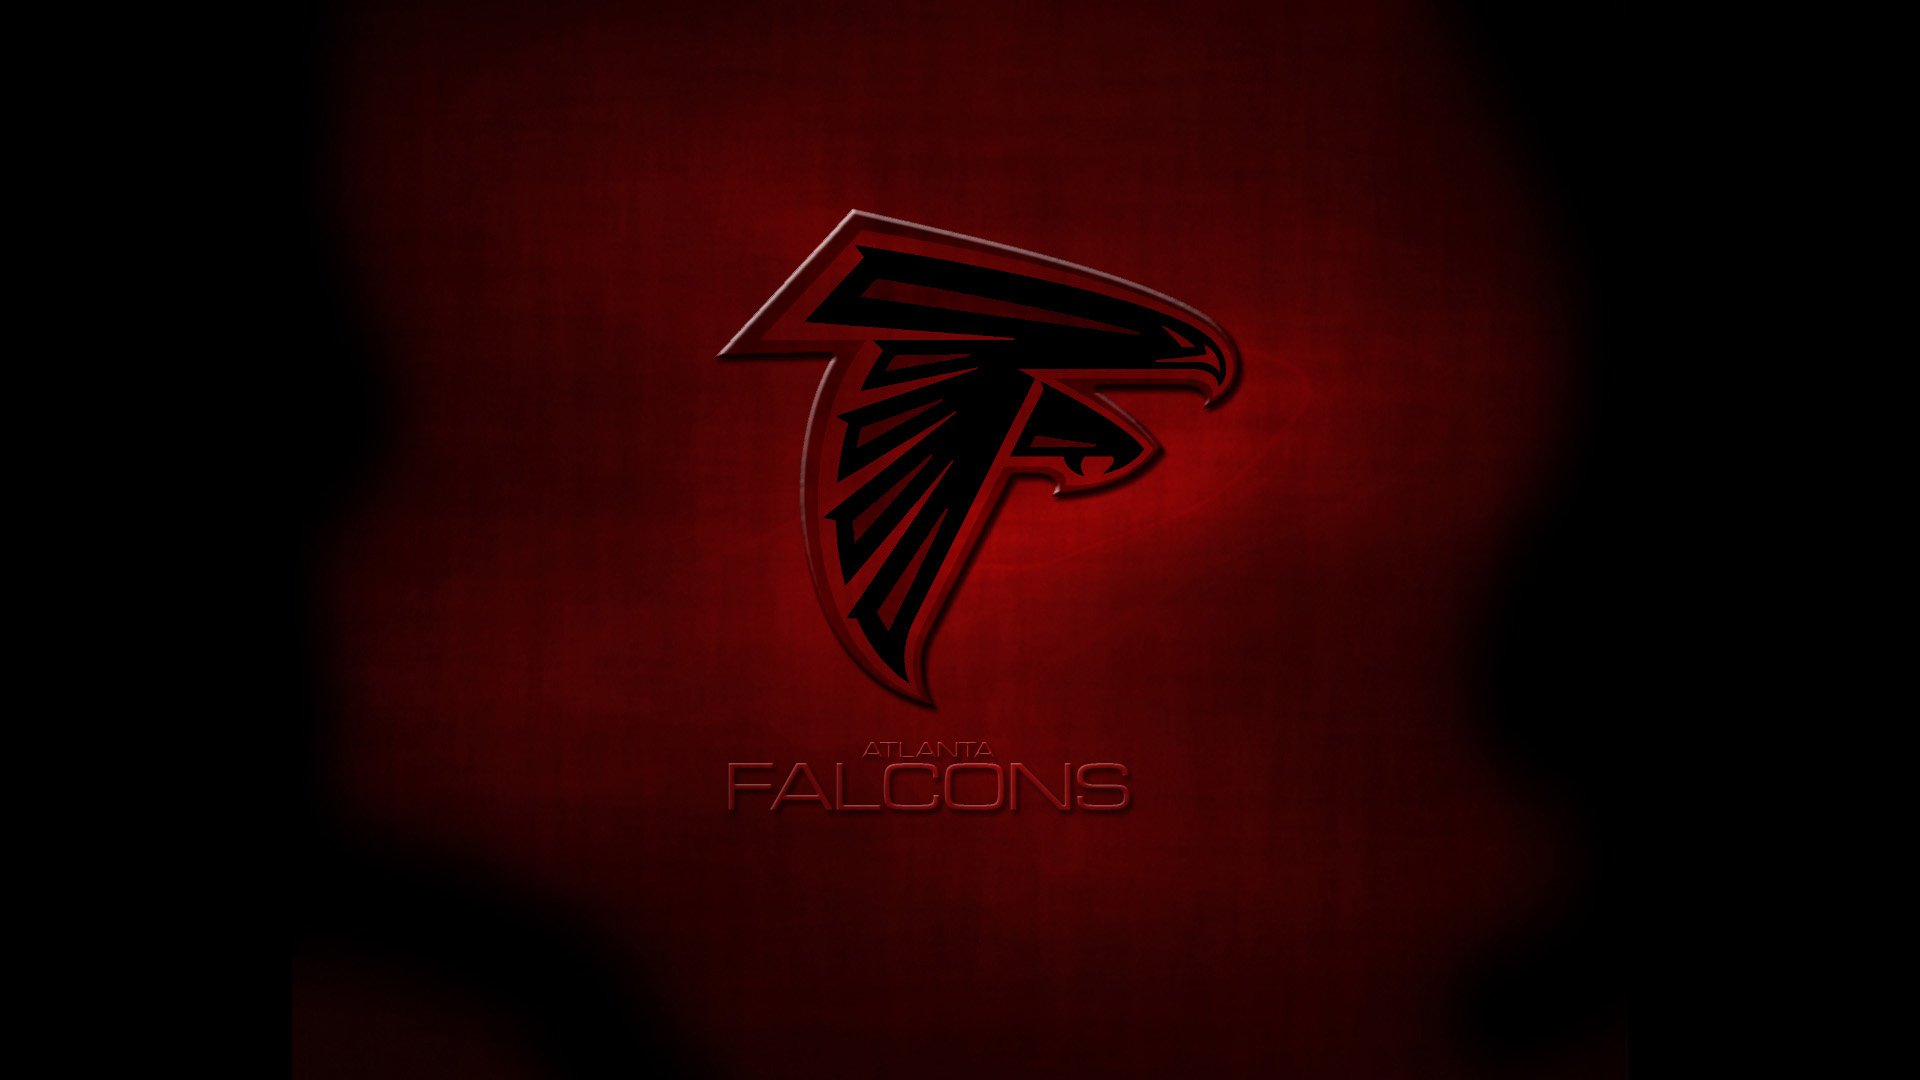 Atlanta Falcons HD Wallpaper and Background